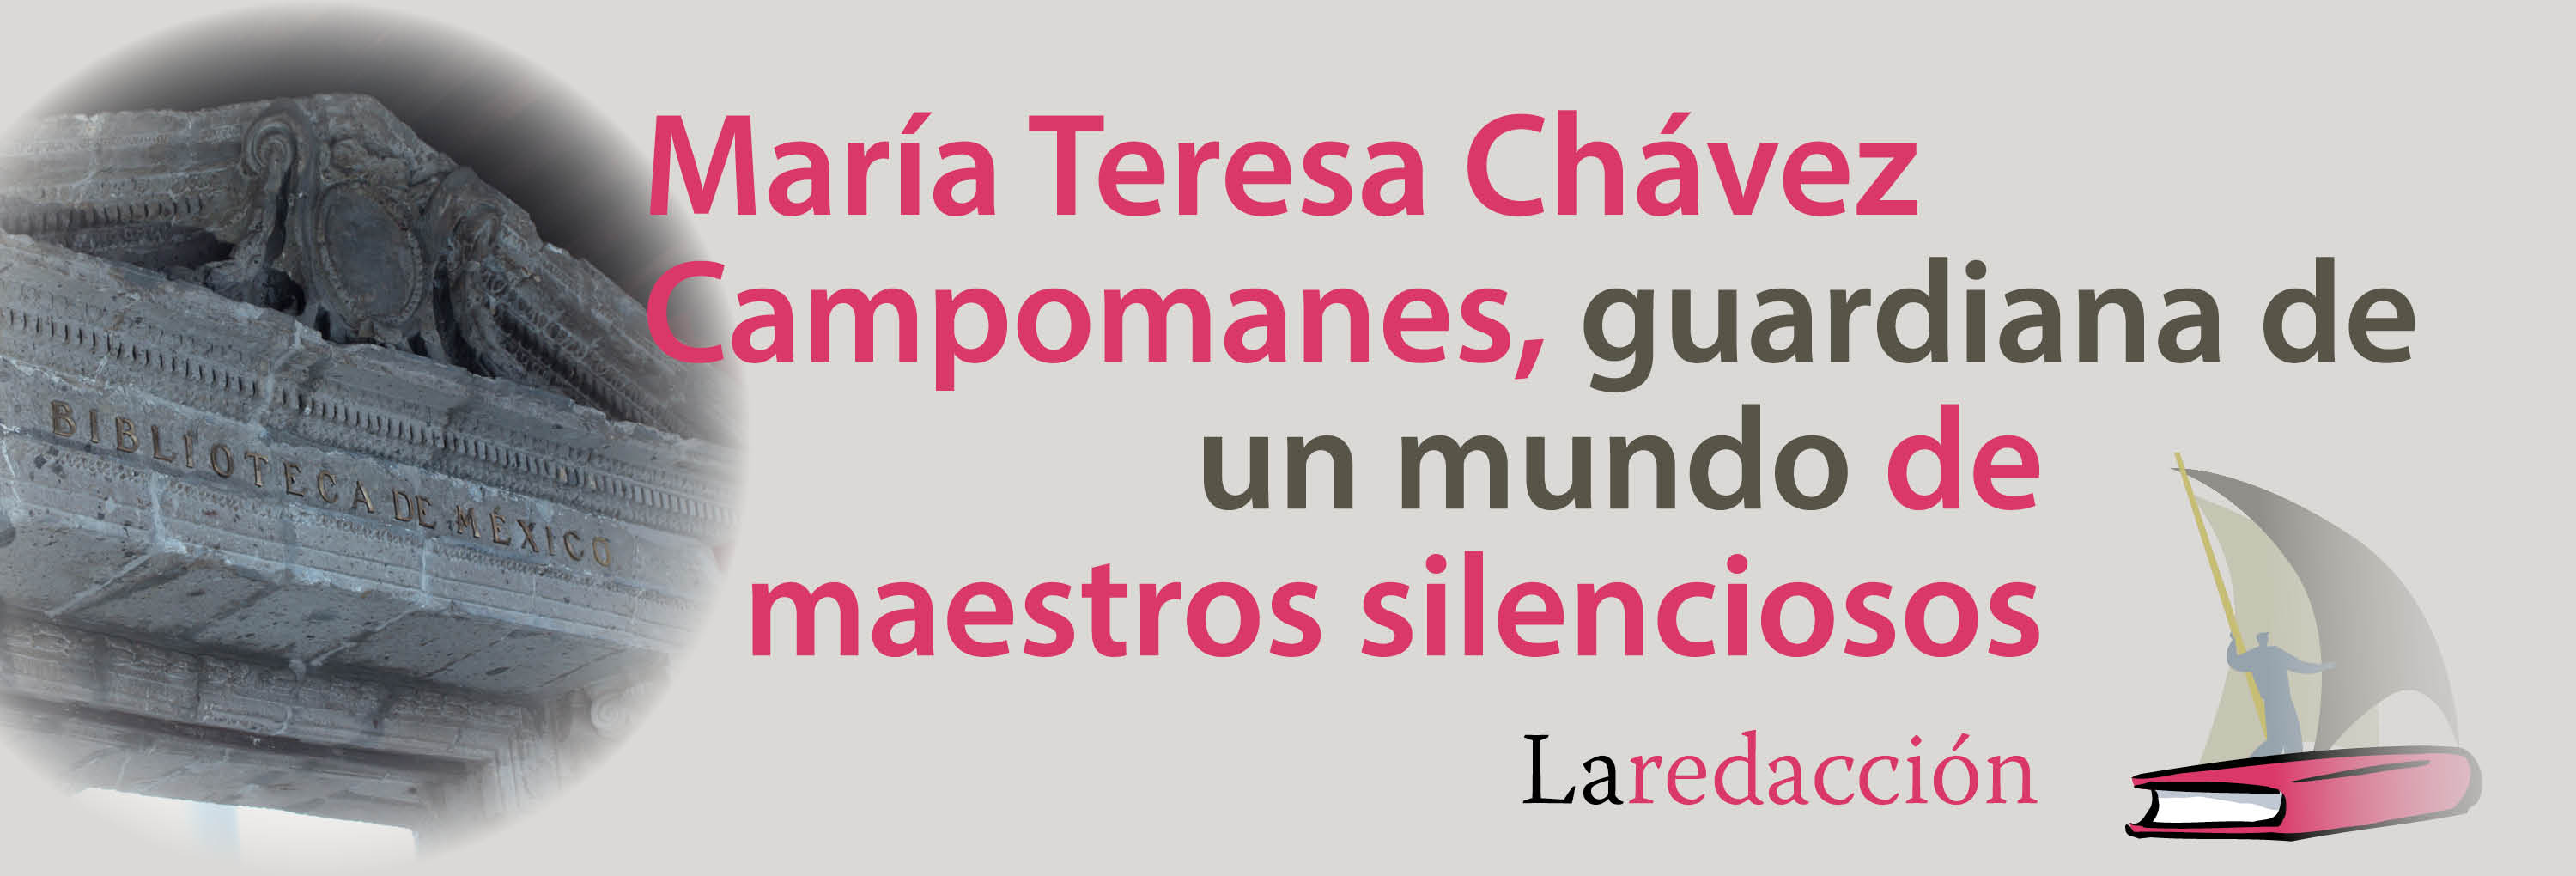 Banner del texto La redacción, “María Teresa Chávez Campomanes, guardiana de un mundo de maestros silenciosos”>
			</div>
		</header>
			<main class=